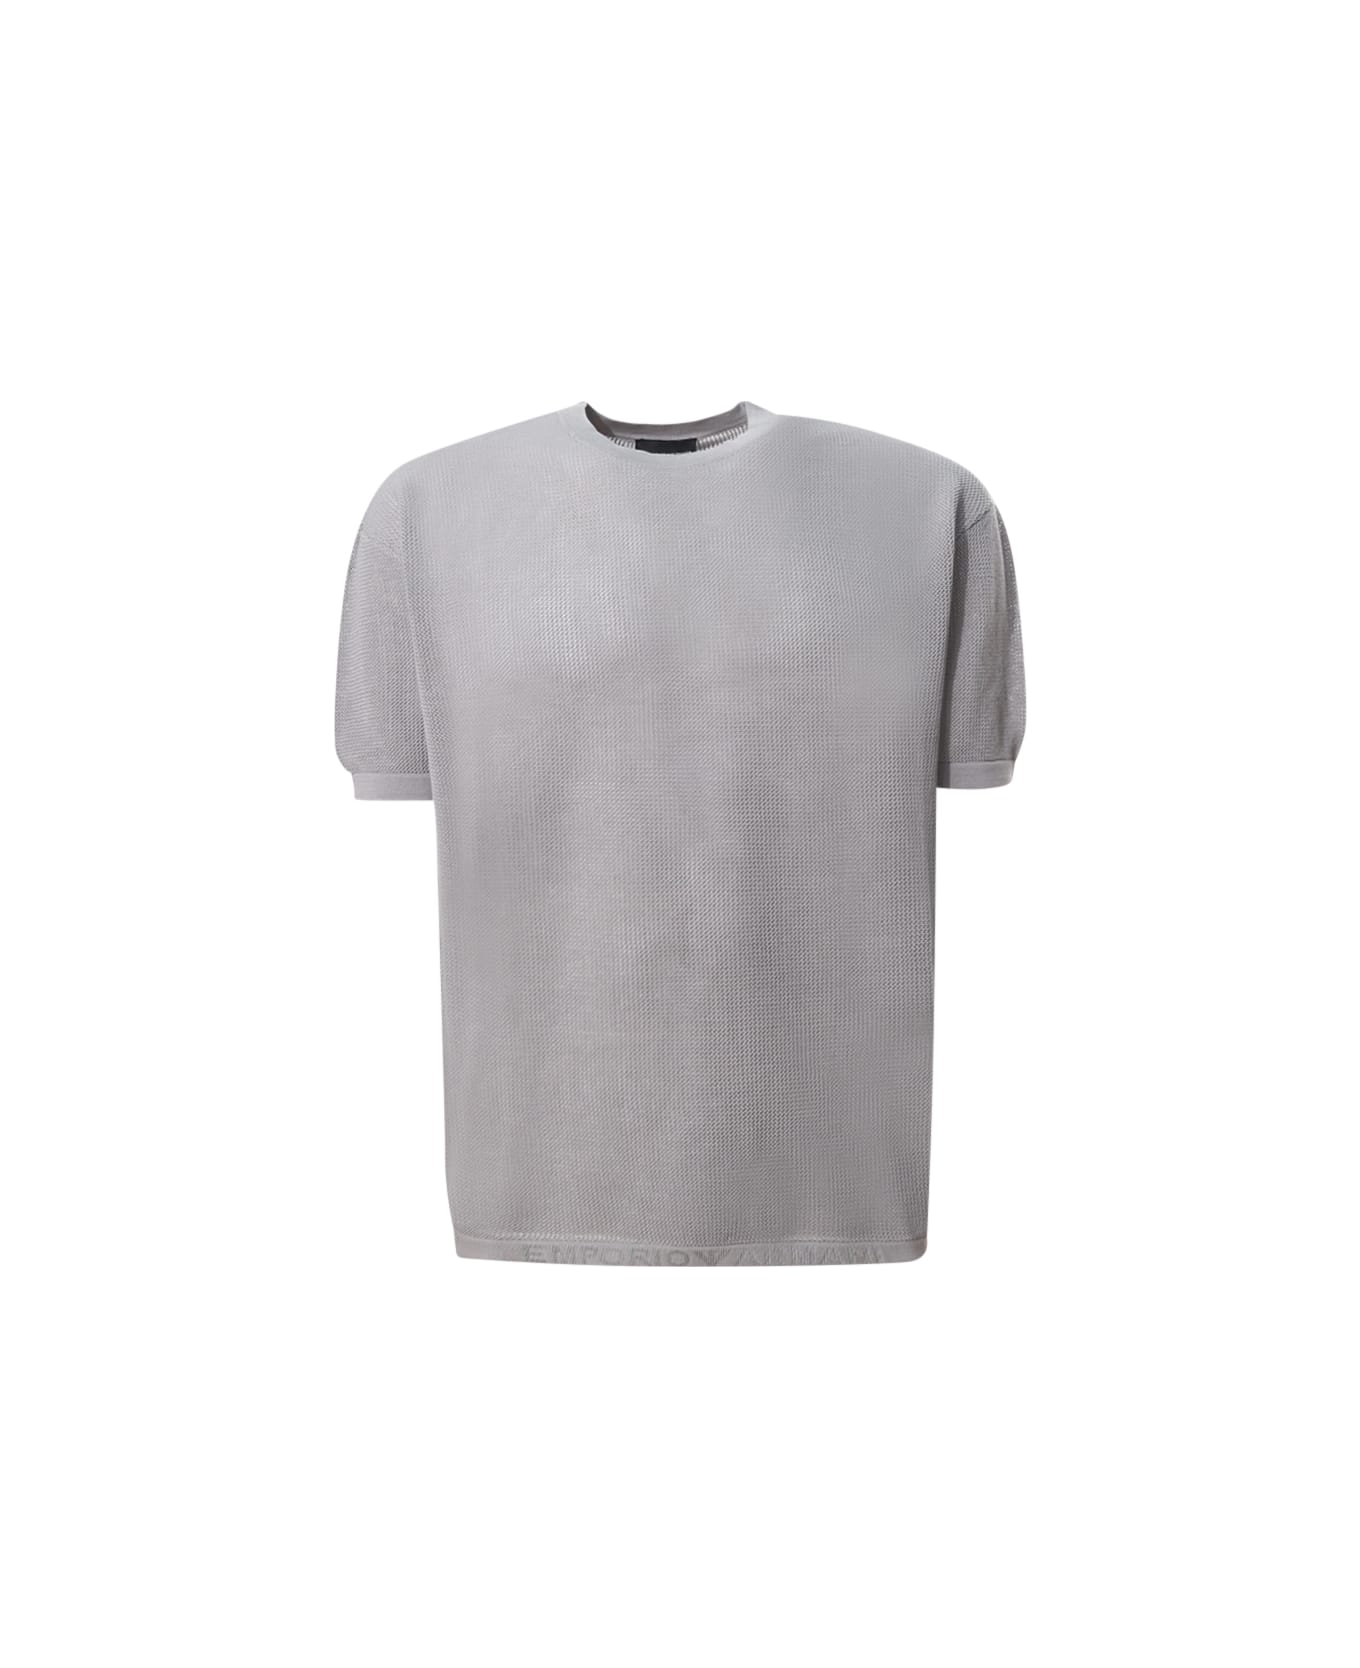 Emporio Armani Sweater - Grey シャツ